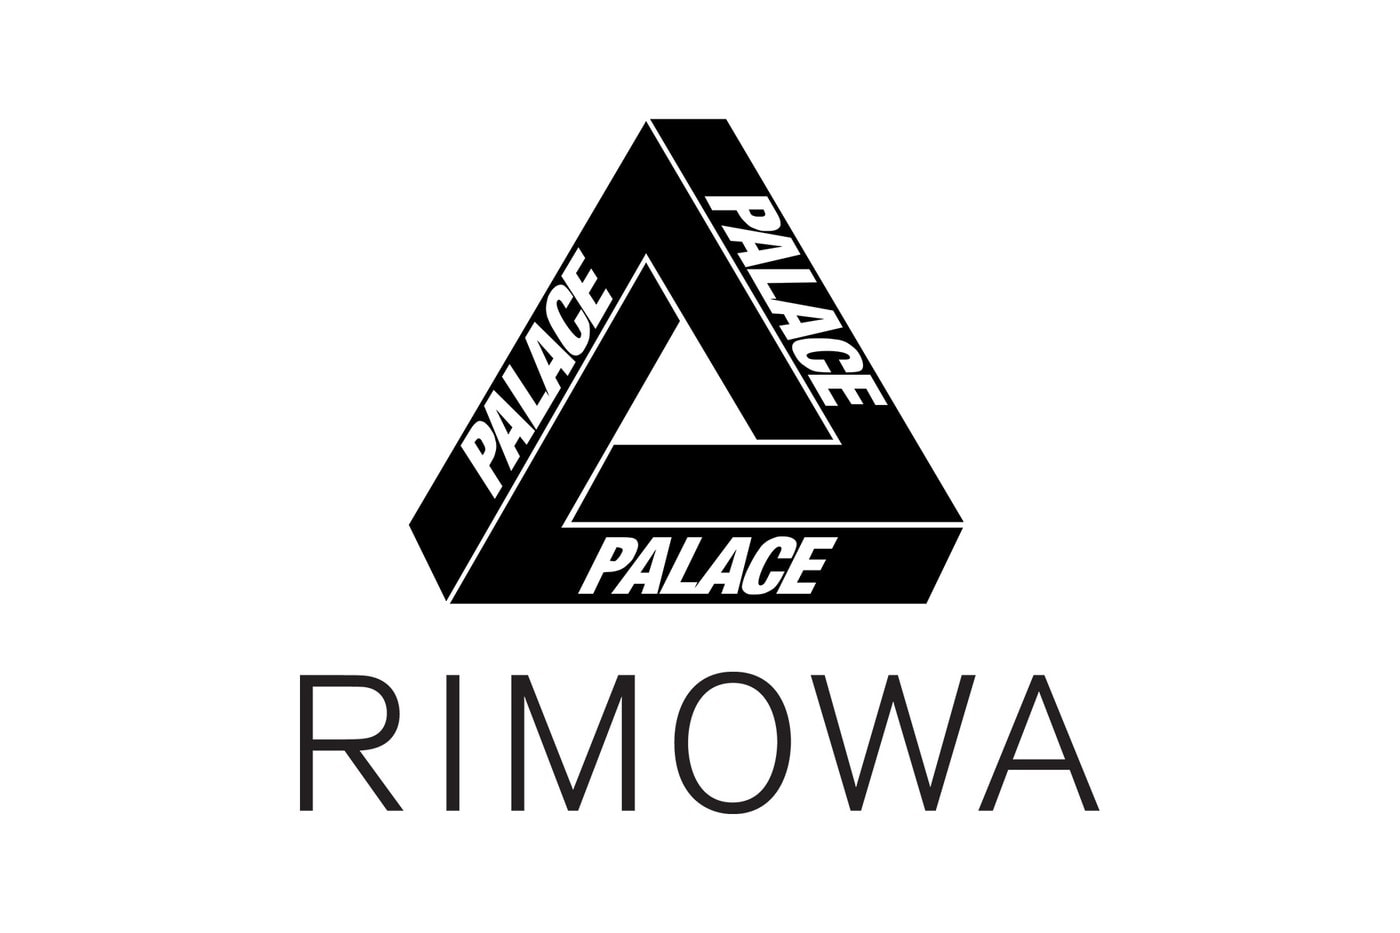 Palace Skateboards 即將攜手 RIMOWA 推出全新联名系列